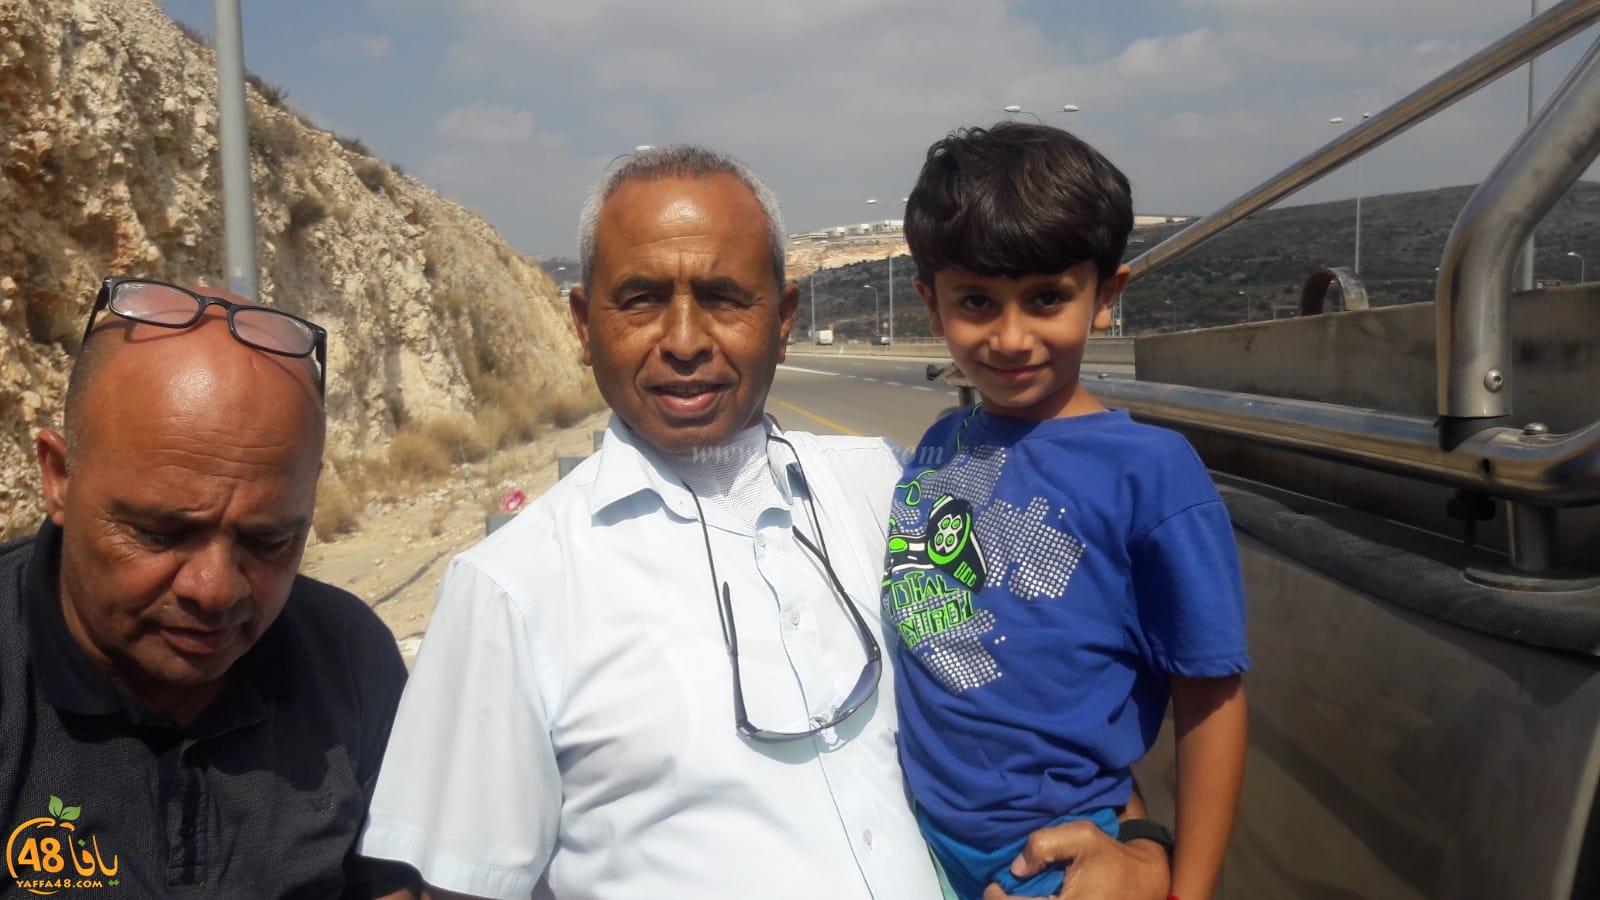 شاهد: لقاء مع الحاج كريّم الجاروشي من الرملة بعد نجاحه بإعادة الطفل المختطف الى ذويه 